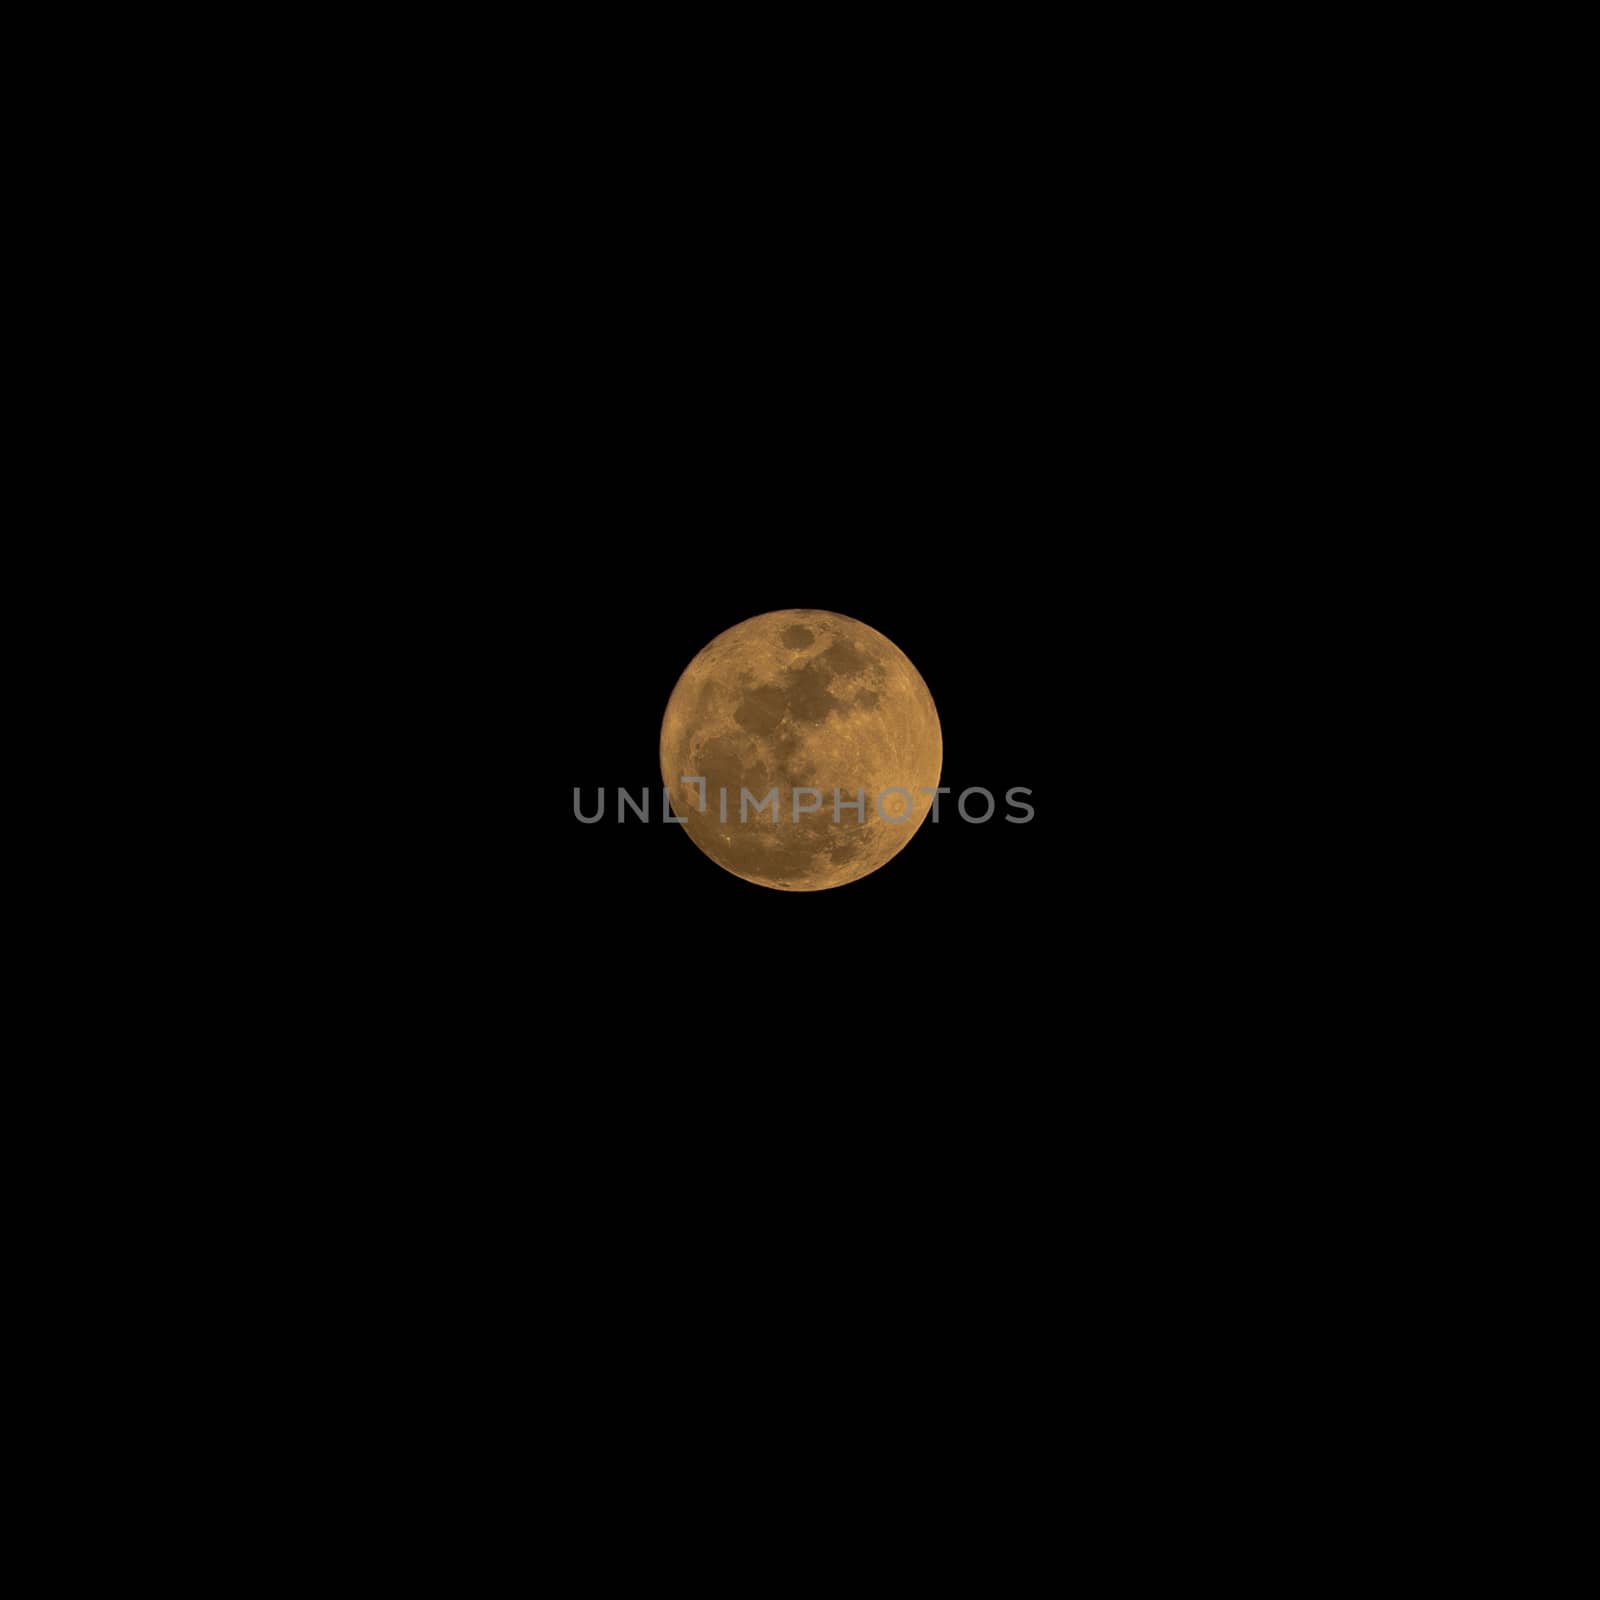 The moon on Christmas 25 Dec 2015 19:15 by PongMoji